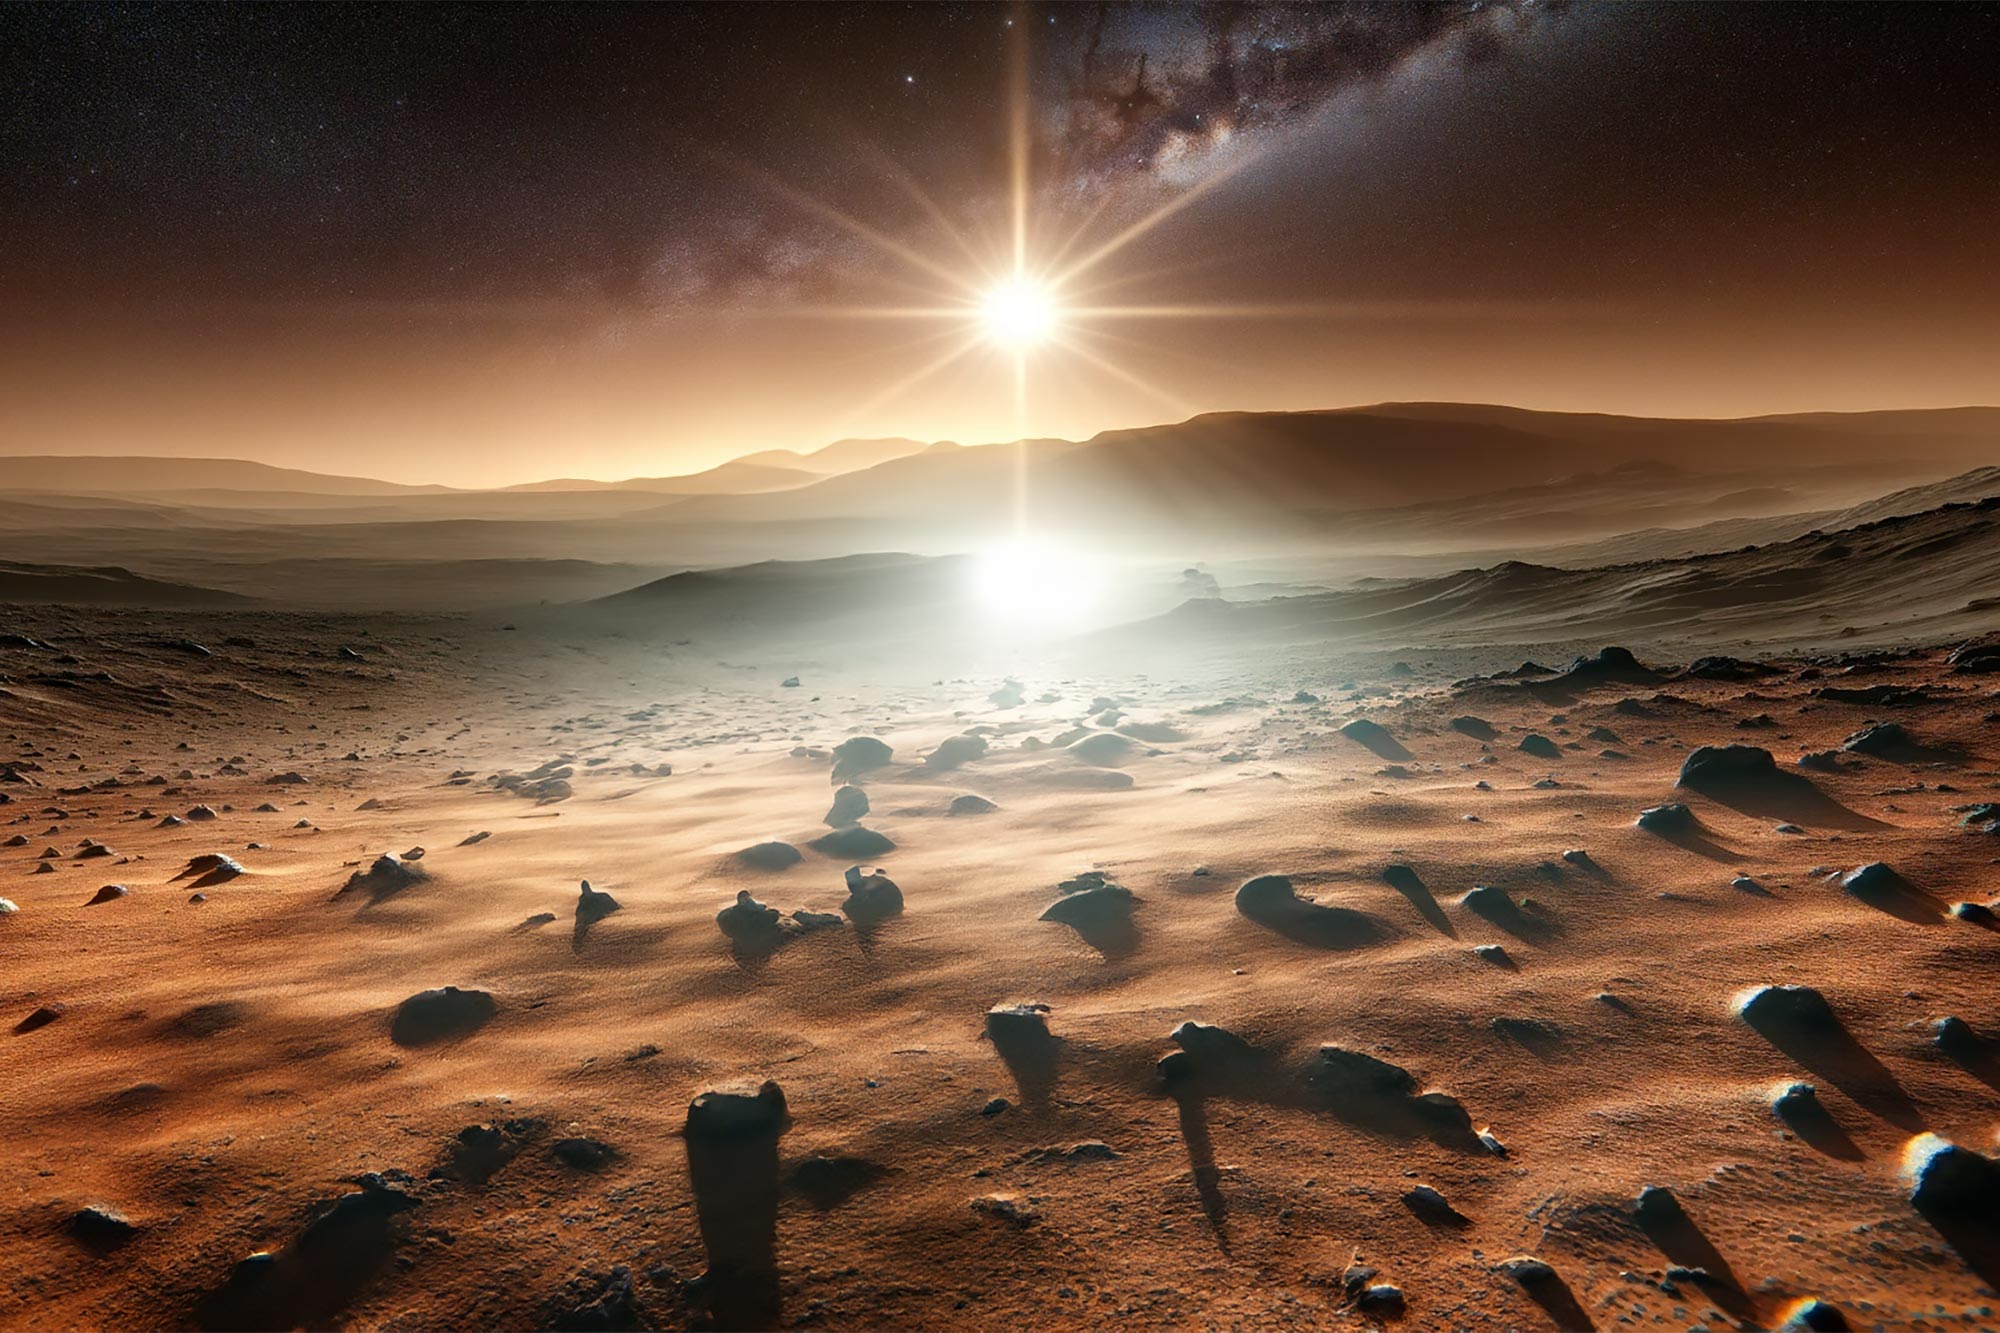 Der Curiosity Mars Rover der NASA fängt einen Marstag von morgens bis abends ein